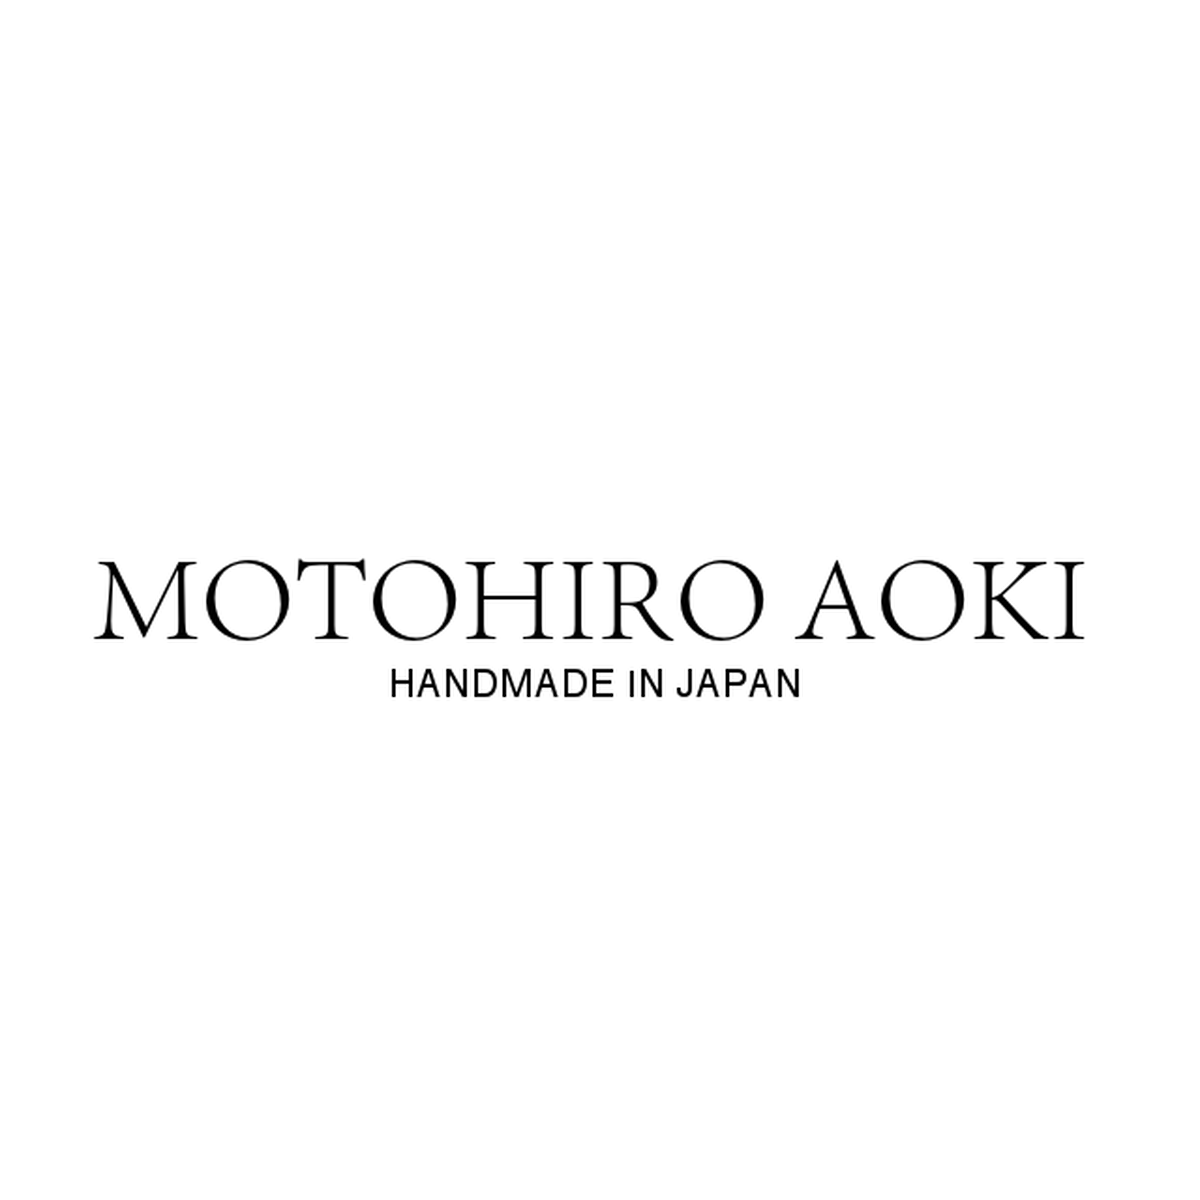 Motohiro Aoki